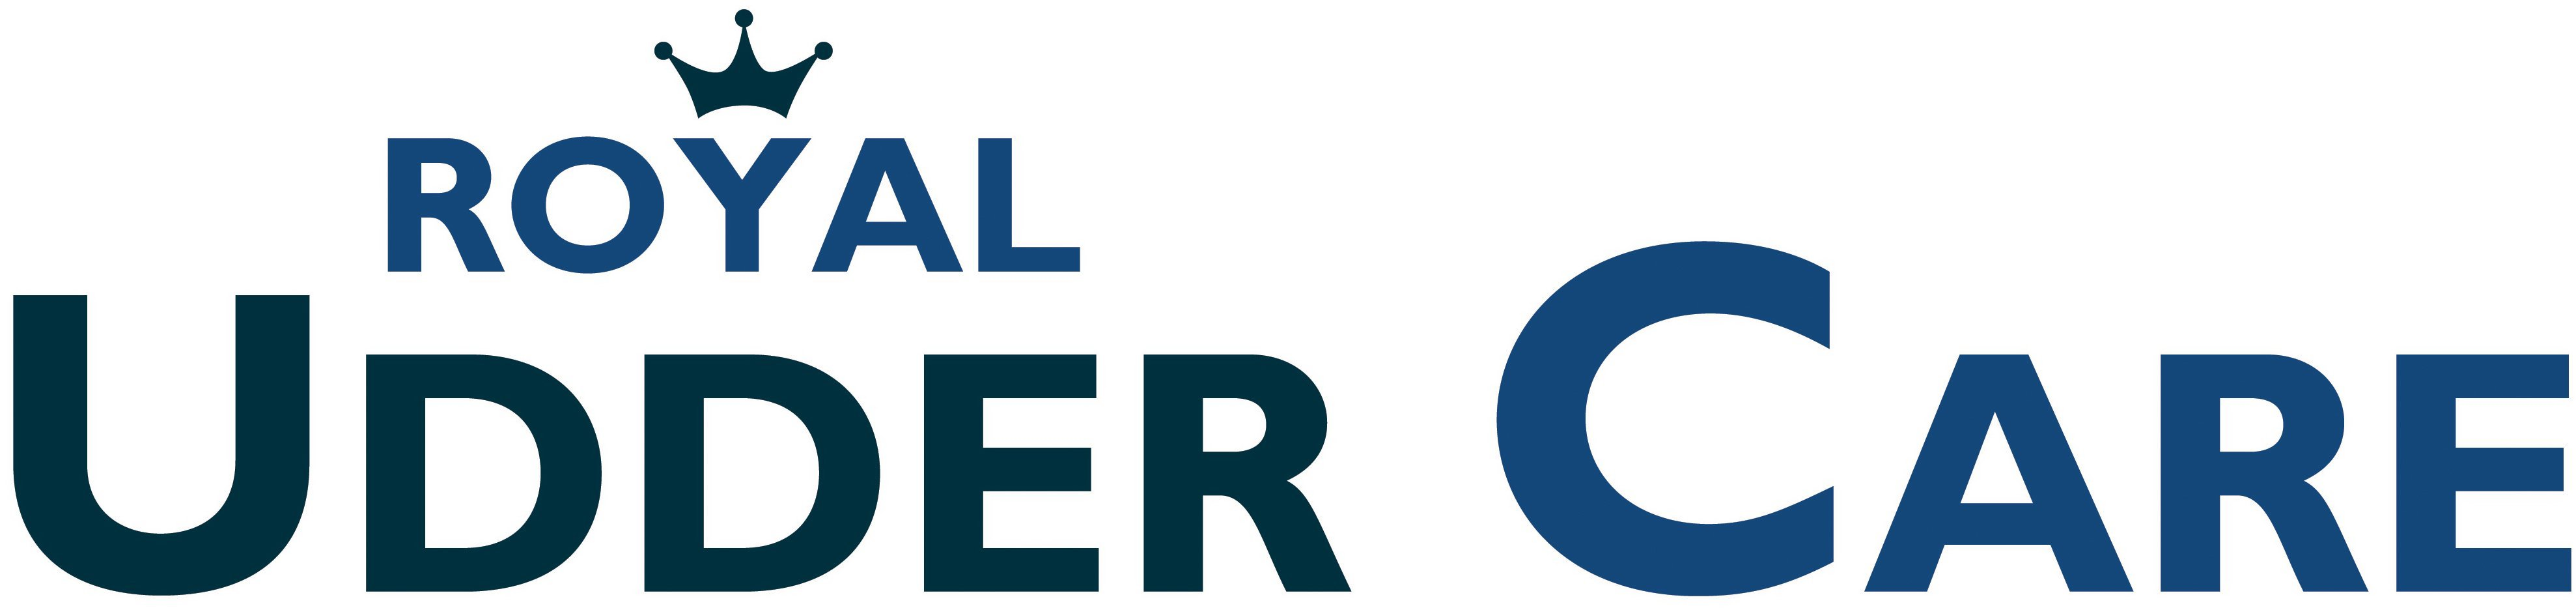 Trademark Logo ROYAL UDDER CARE